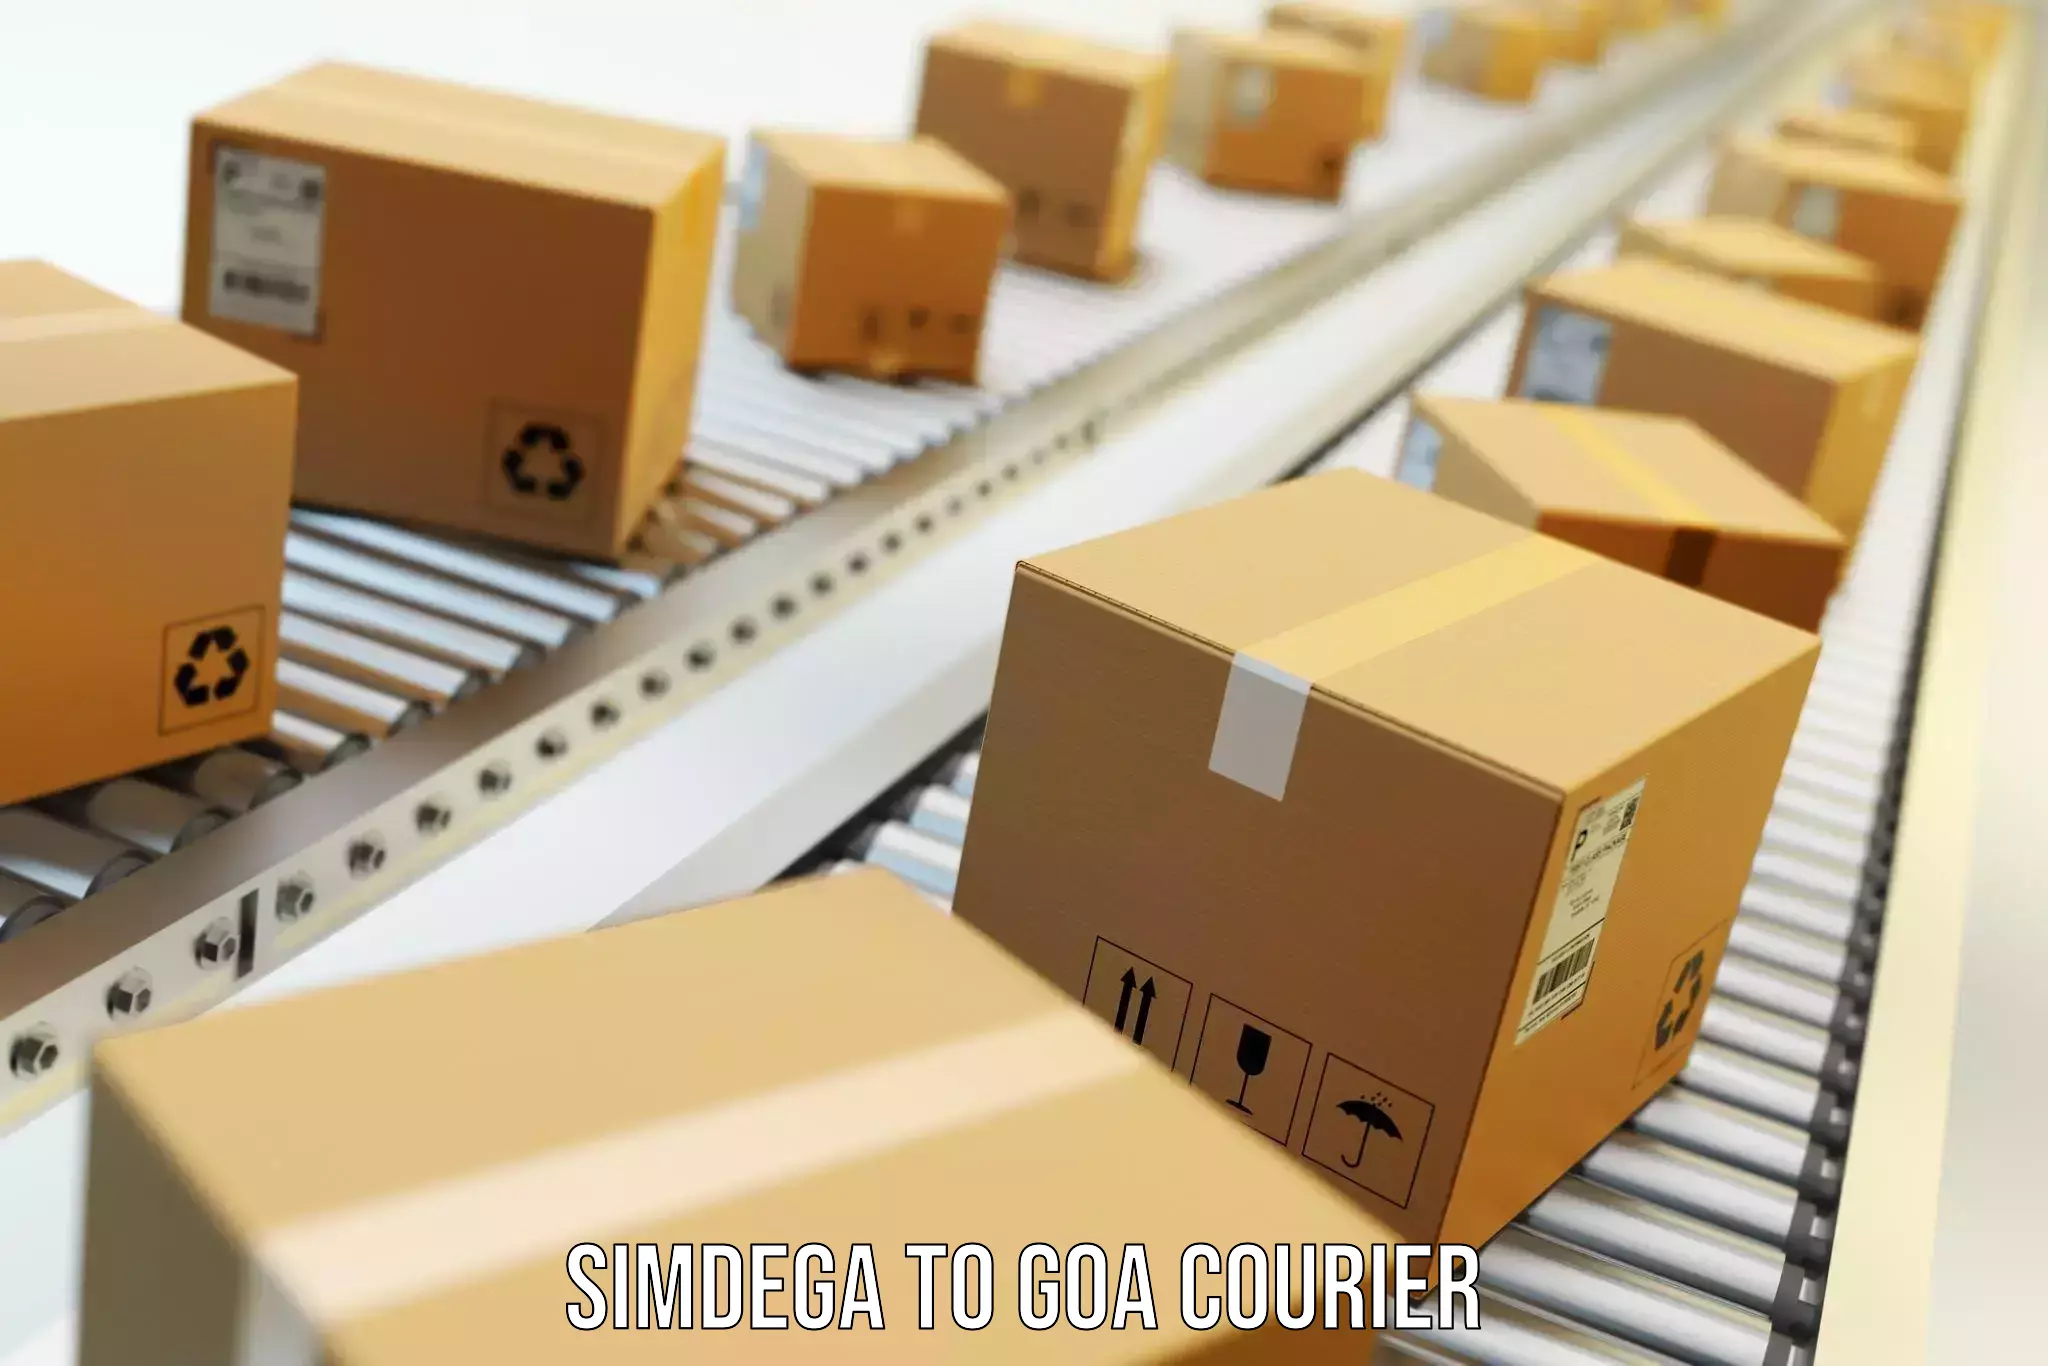 Furniture delivery service Simdega to Goa